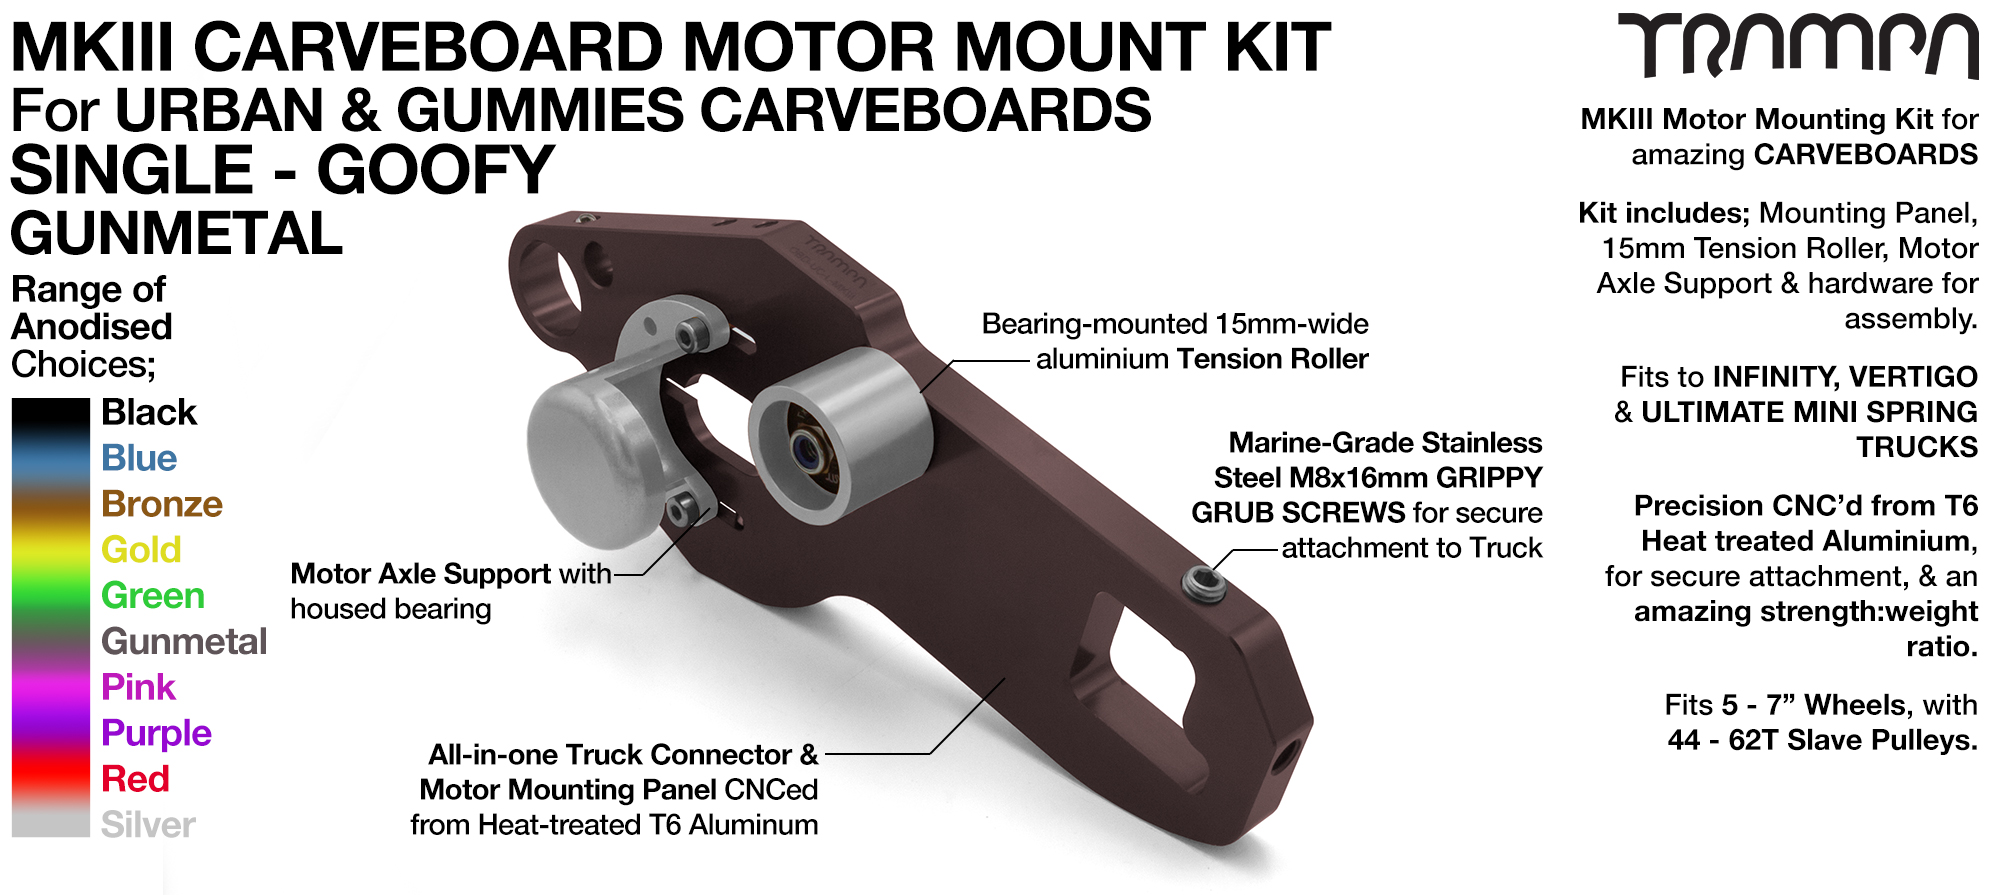 Mk III CARVE BOARD Motor Mount Kit - SINGLE GUNMETAL